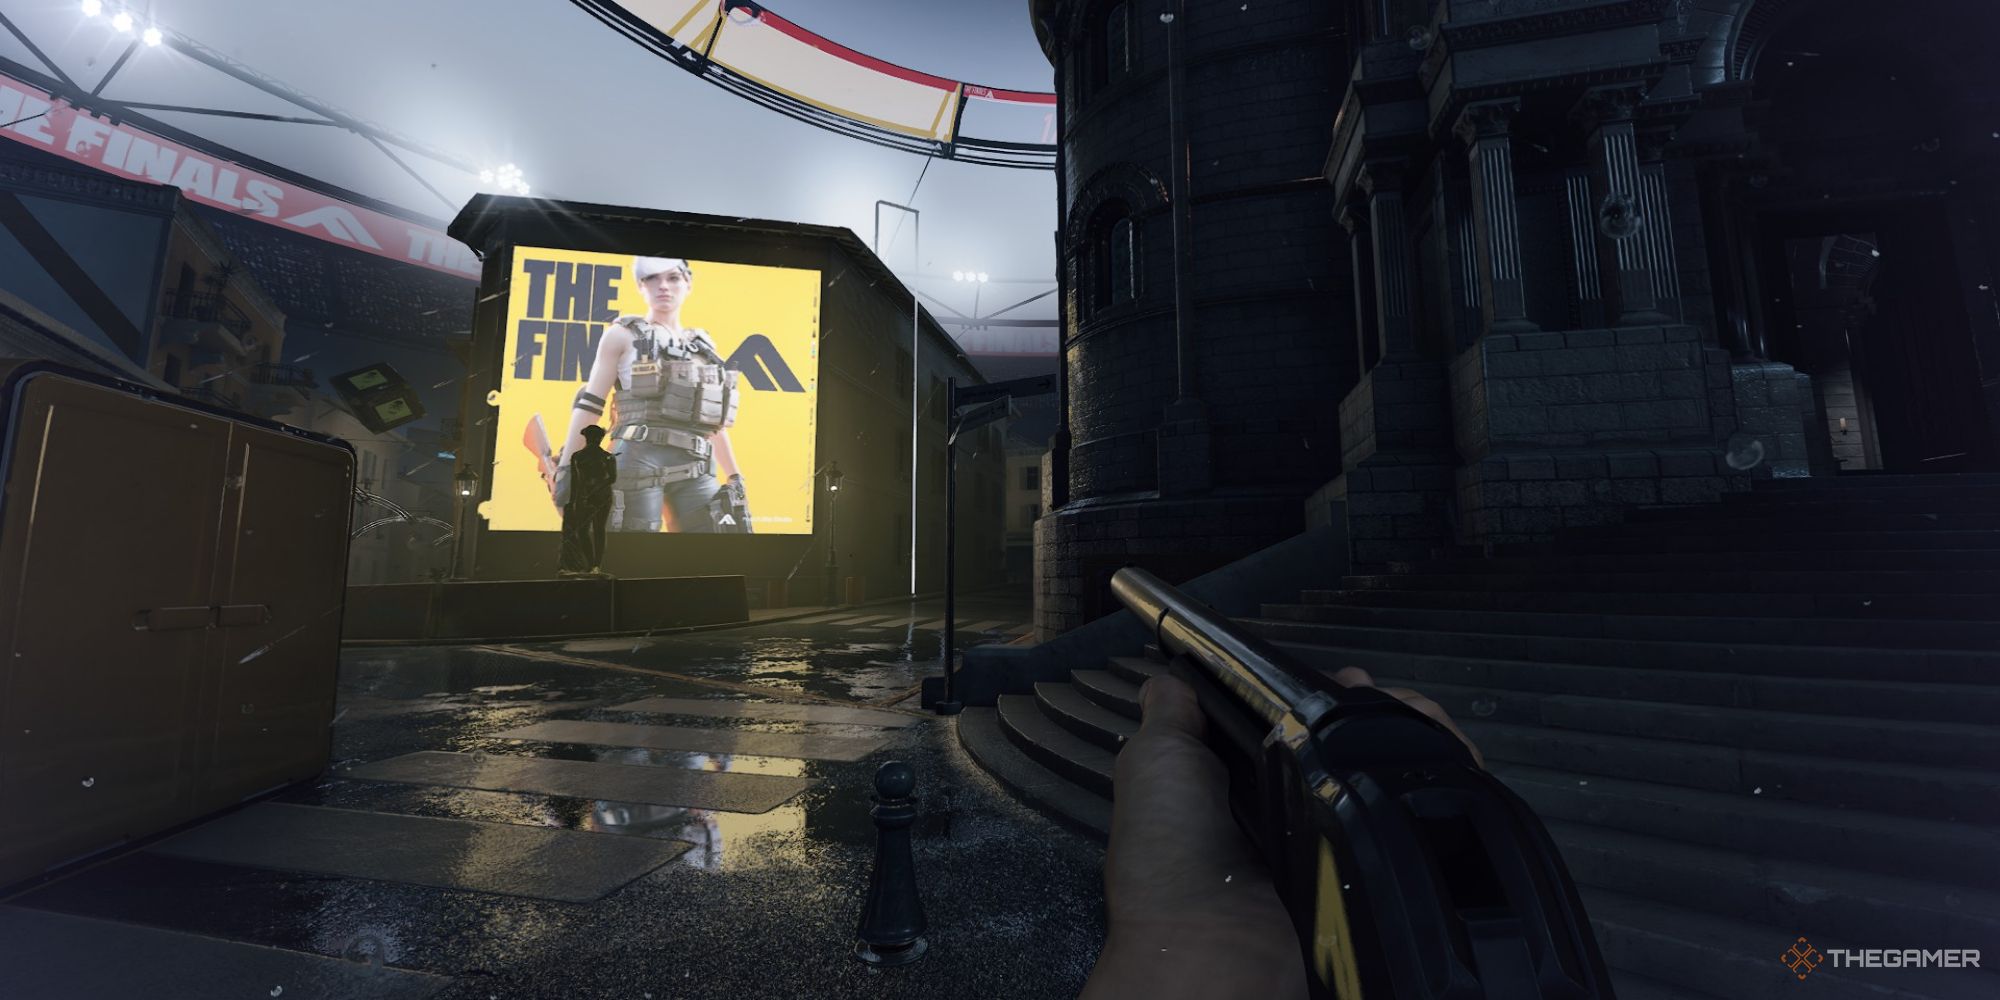 Ein Screenshot aus „The Finals“, der einen Spielercharakter zeigt, der eine Schrotflinte im Regen hält.  Die Werbung für das Finale ist in einiger Entfernung auf einem digitalen Bildschirm zu sehen.